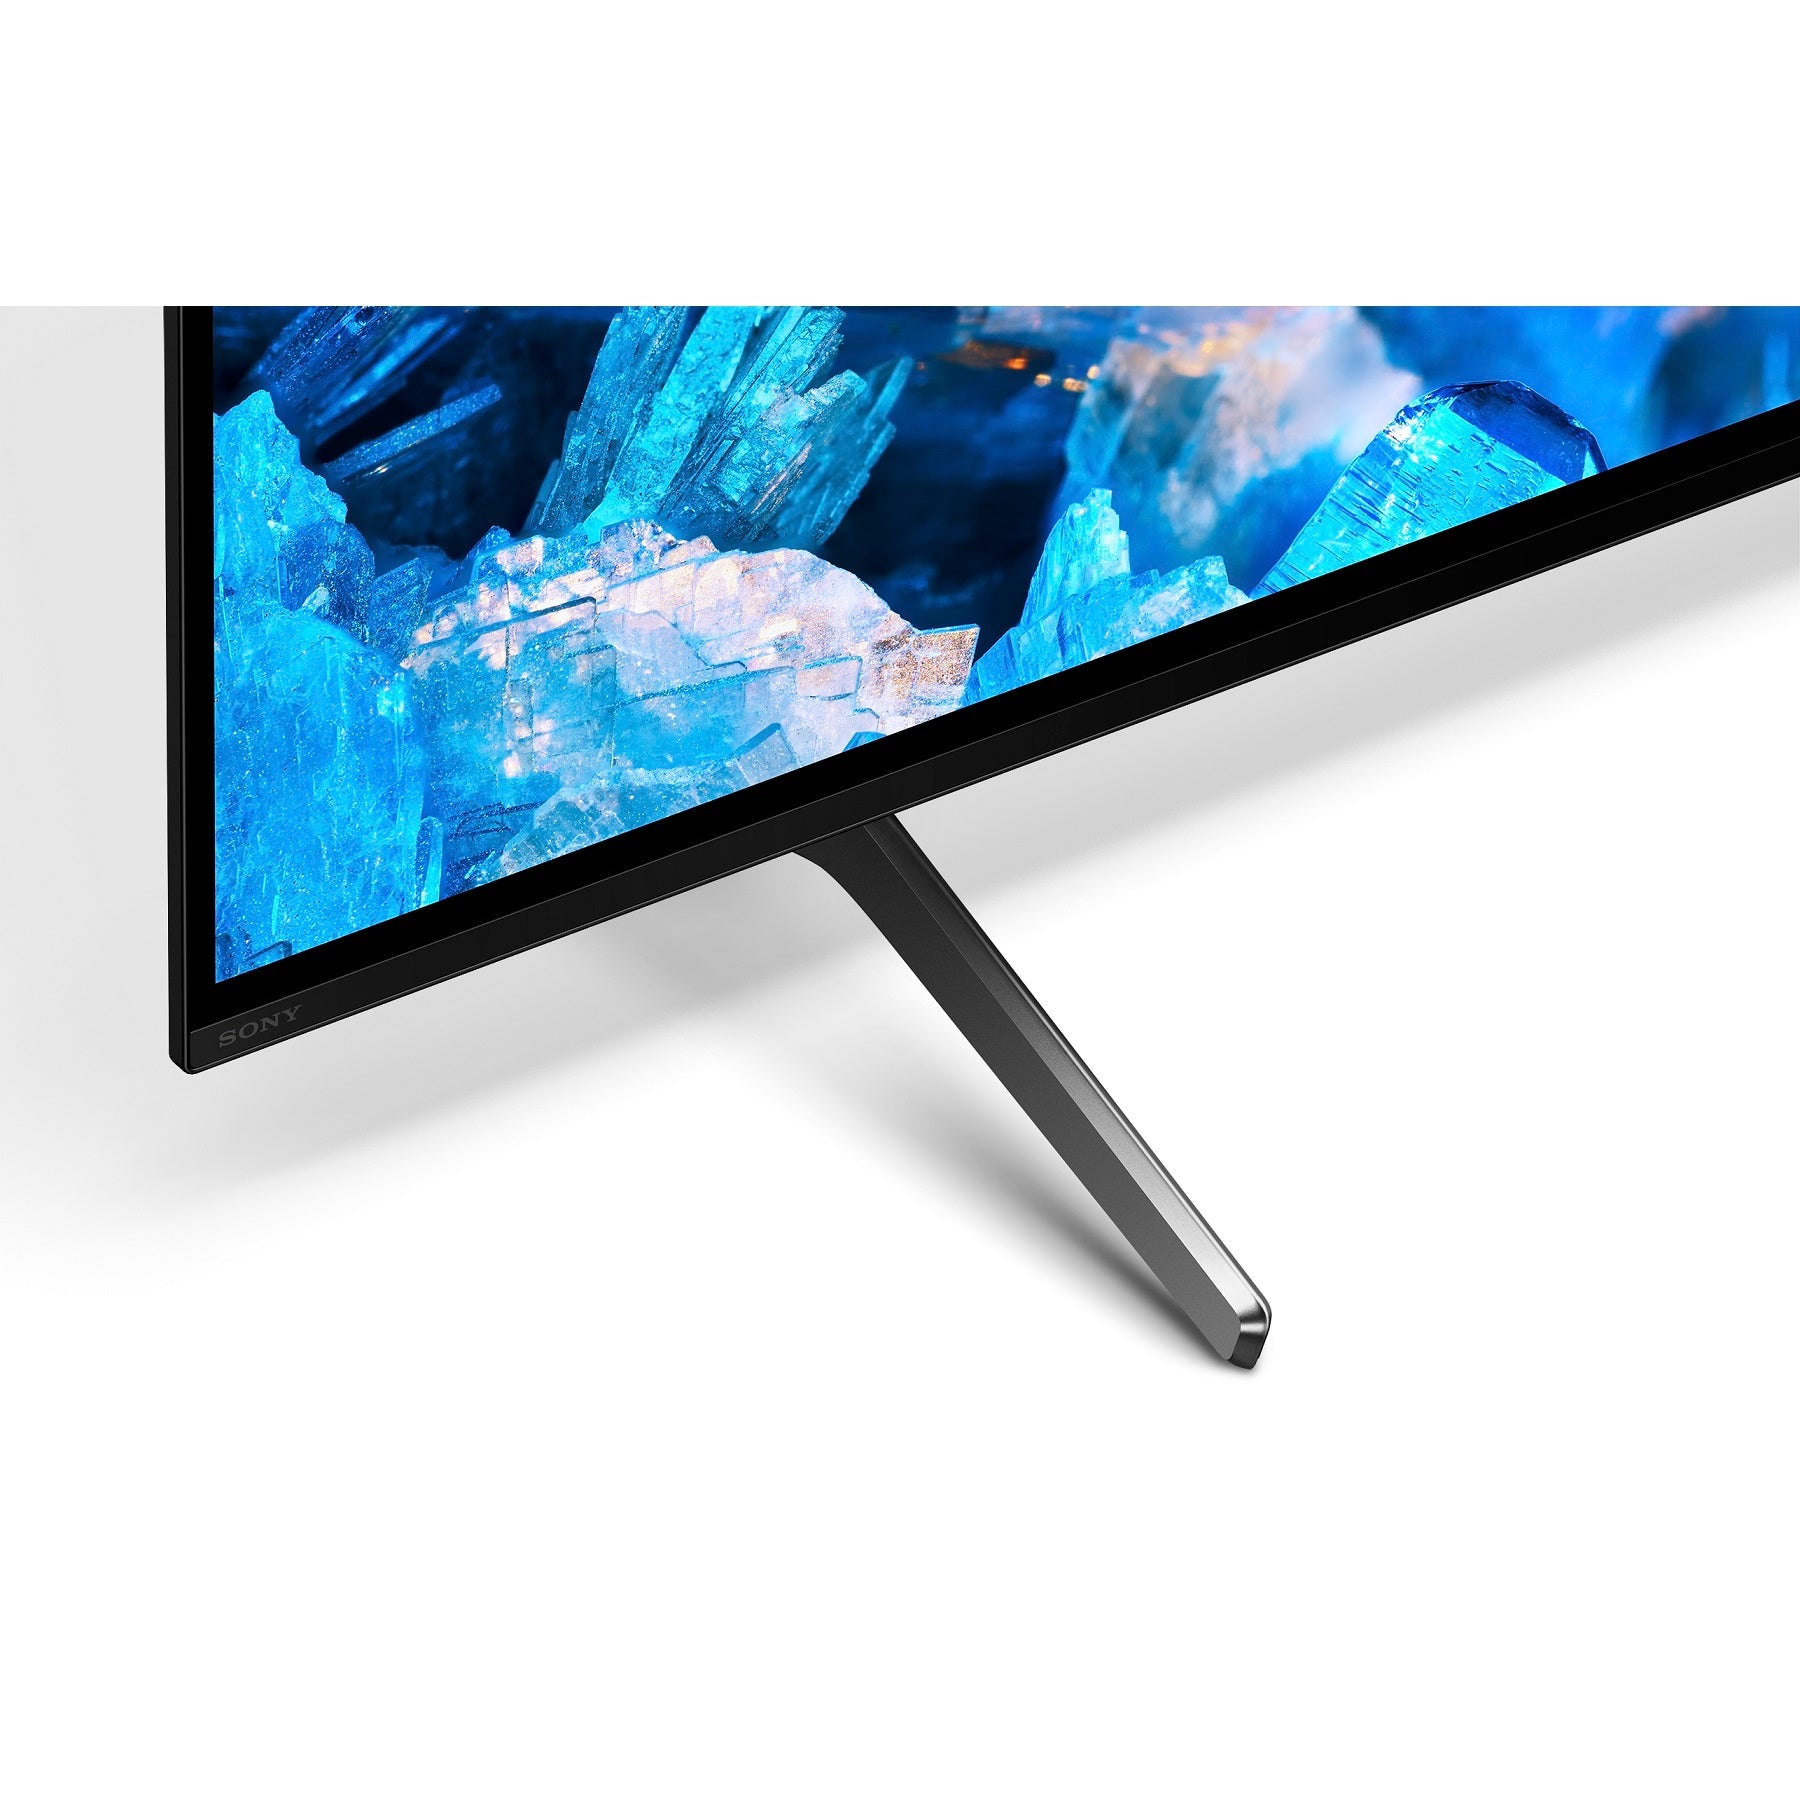 טלוויזיה 65 אינץ A75K | BRAVIA XR | OLED | 4K Ultra HD | HDR | Smart TV